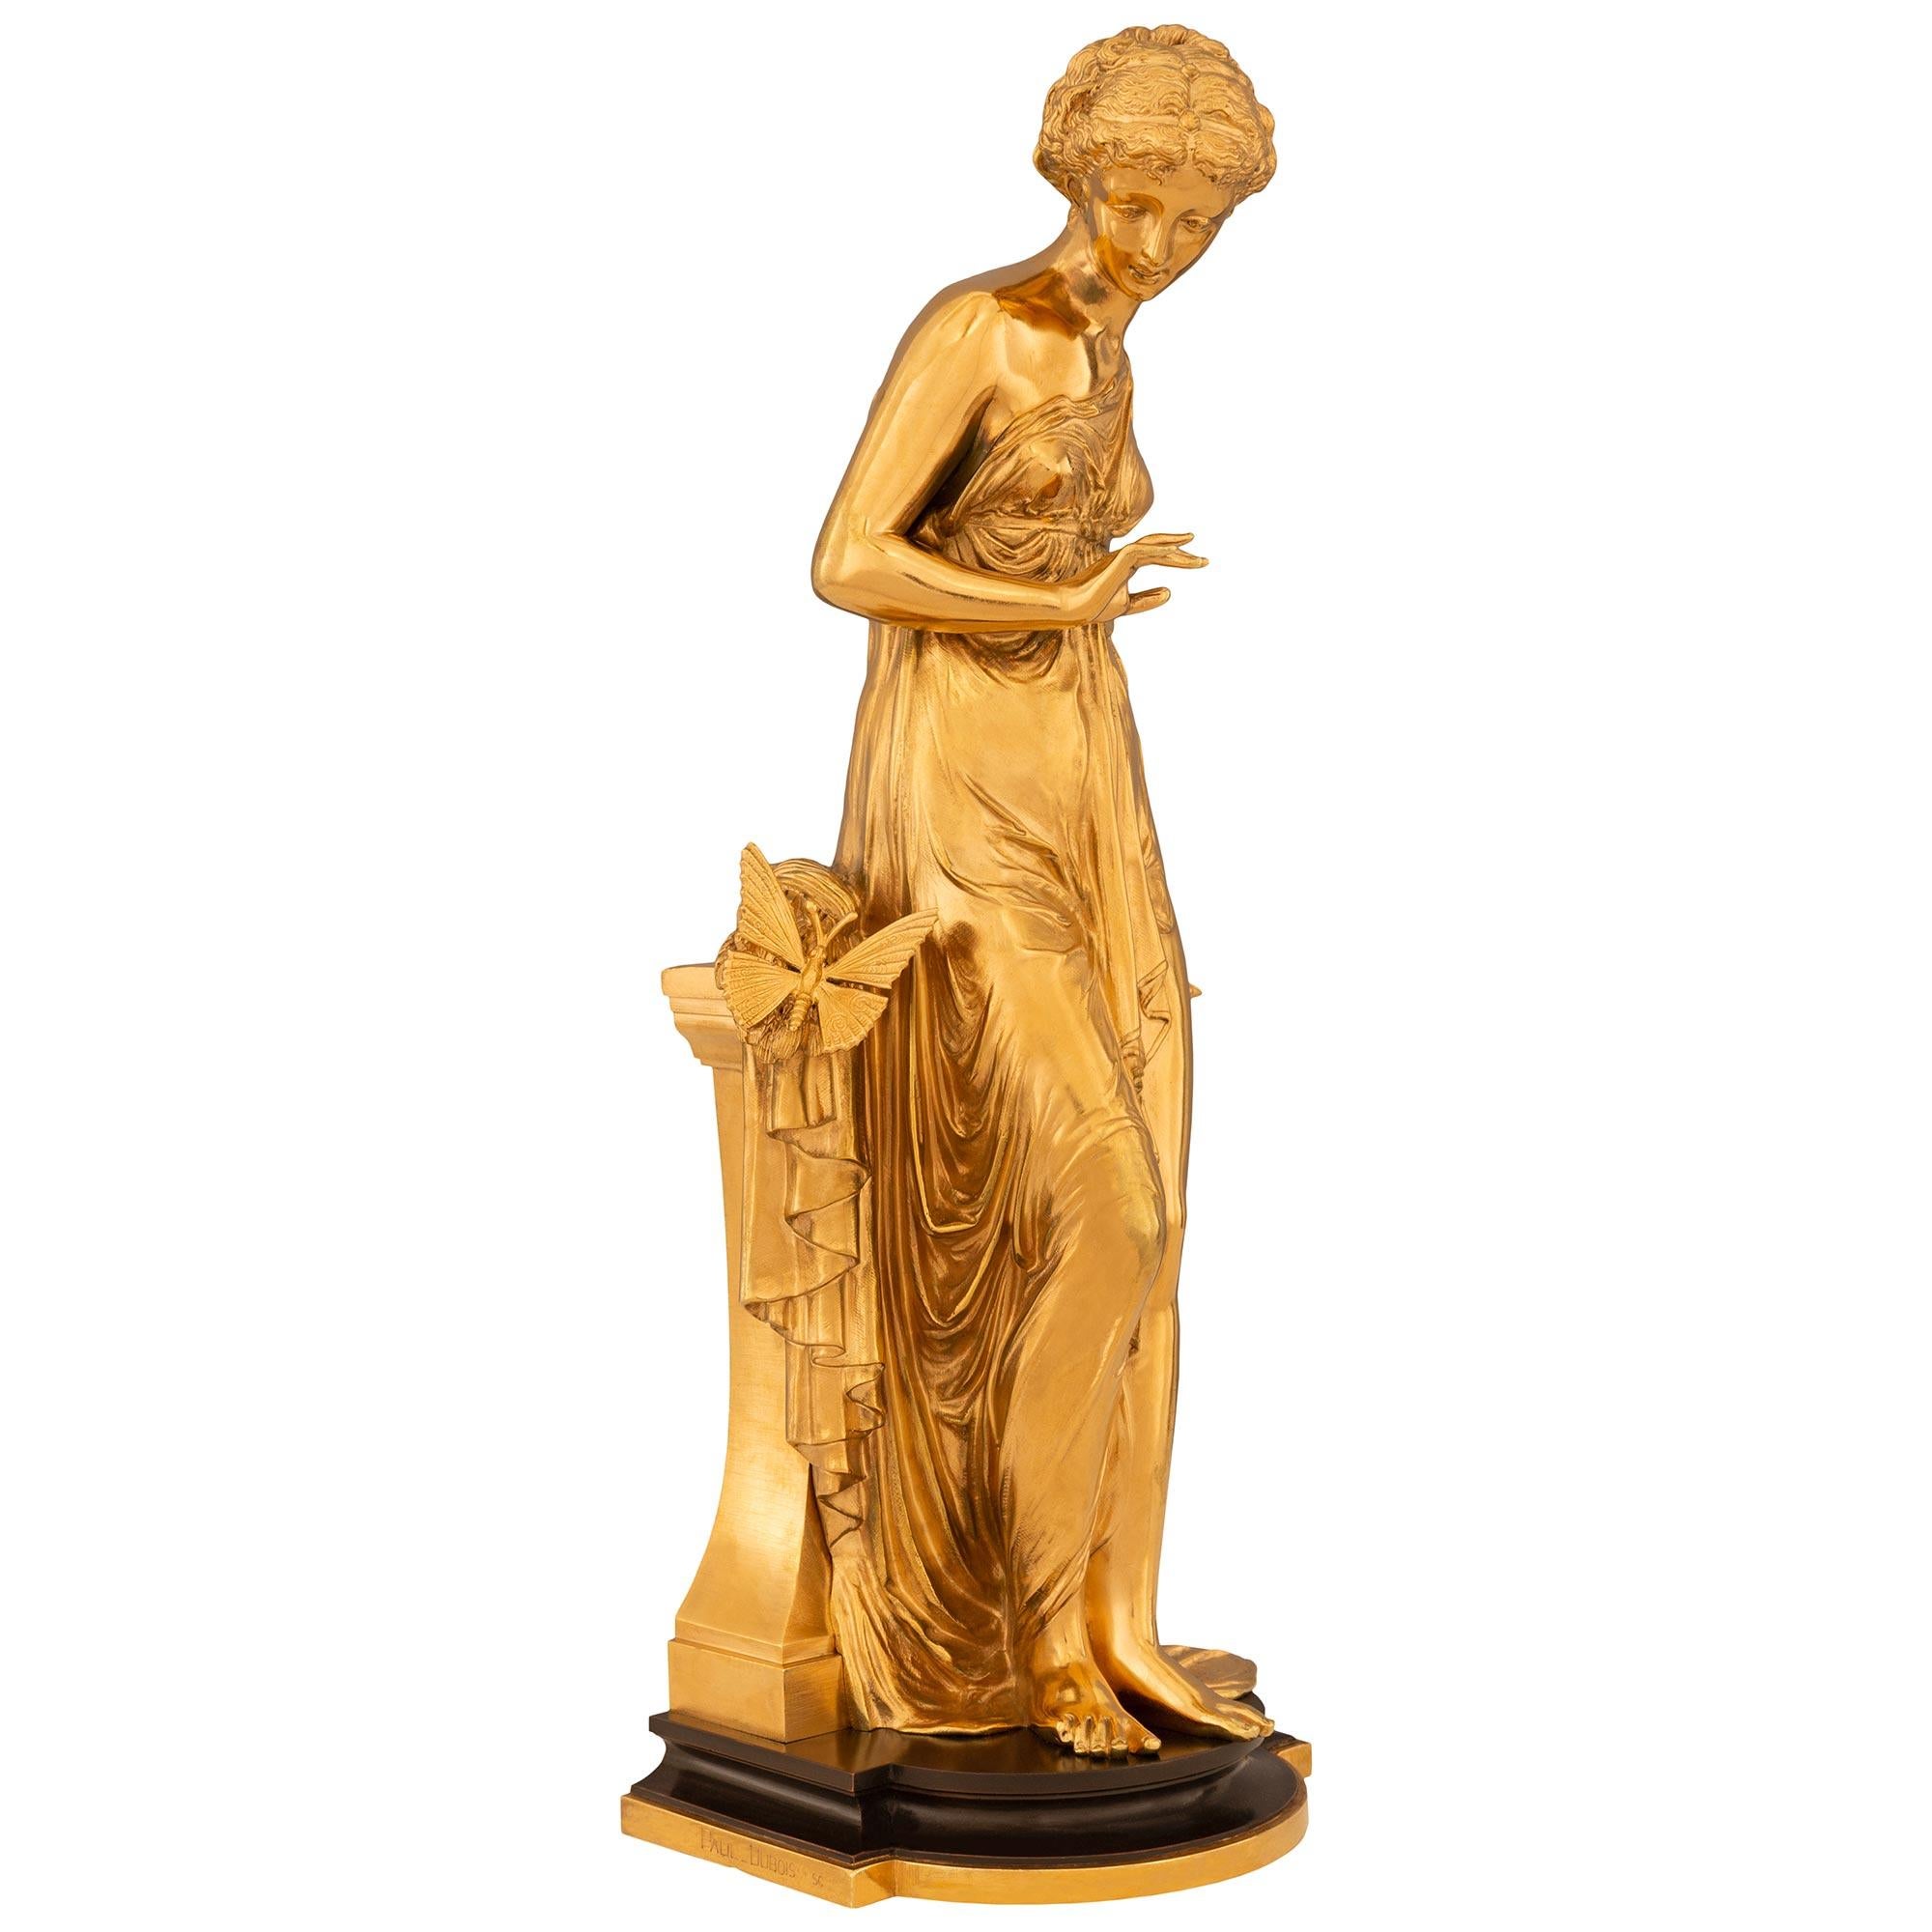 Une paire élégante et de haute qualité de statues néo-classiques françaises du 19ème siècle en bronze patiné et bronze doré, signées Paul Dubois. Ormolu et Bronze patiné, signée Paul Dubois. Chaque belle jeune fille est surmontée d'une plate-forme